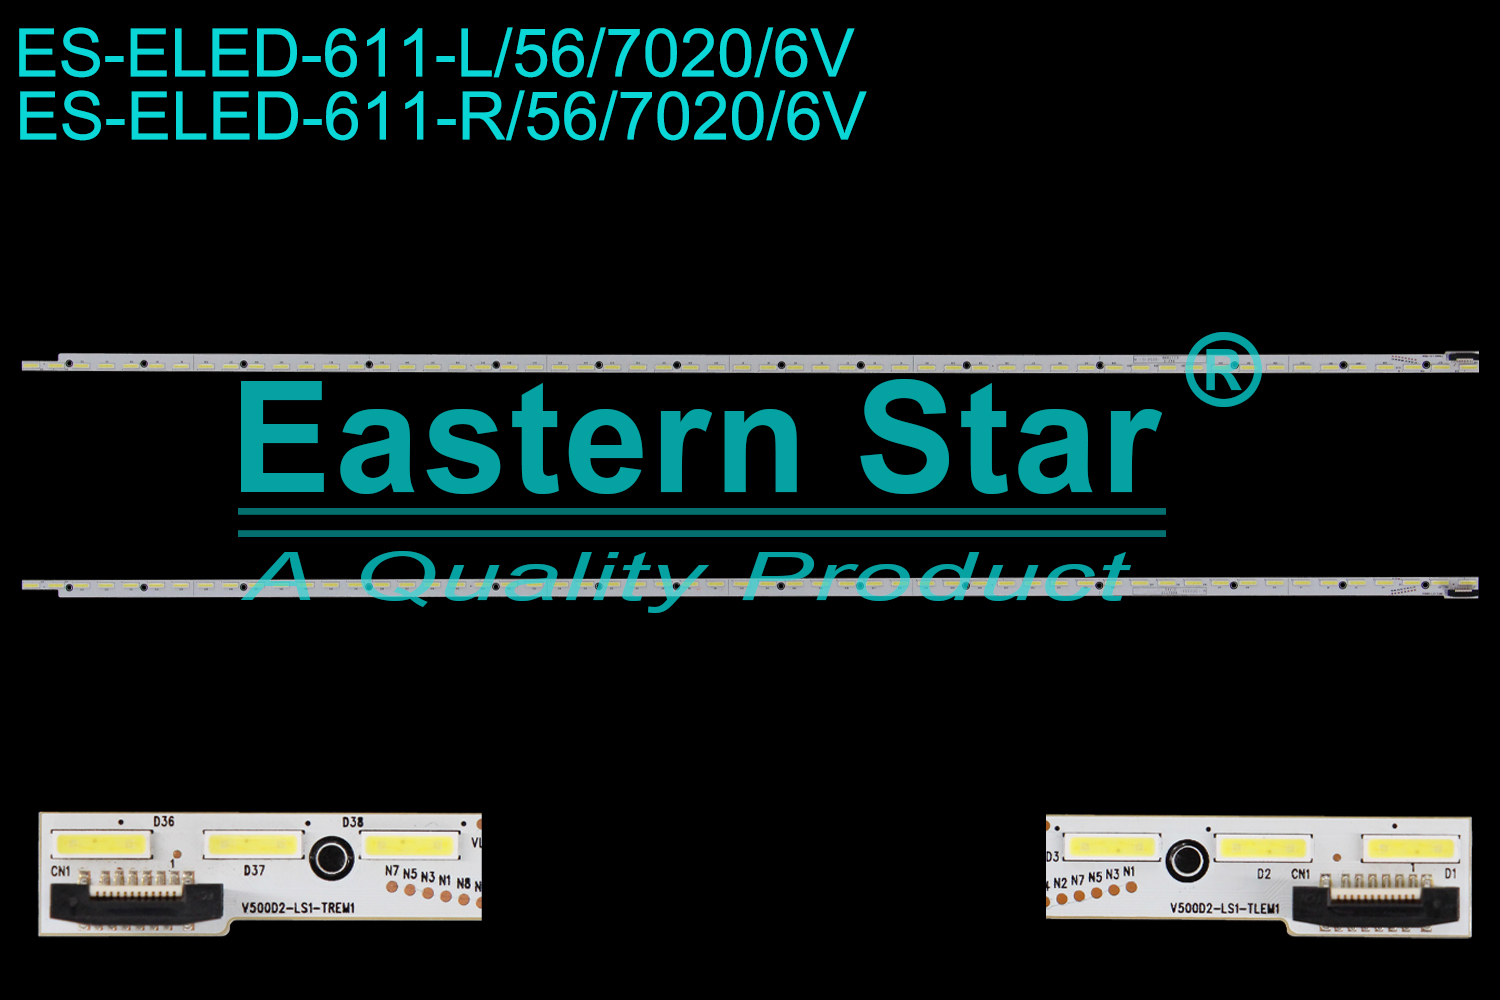 ES-ELED-611 ELED/EDGE TV backlight use for 50'' Sanyo  DP50E44  V500D2-LS1-TREM1  V500D2-LS1-TLEM1 LED STRIPS(2)